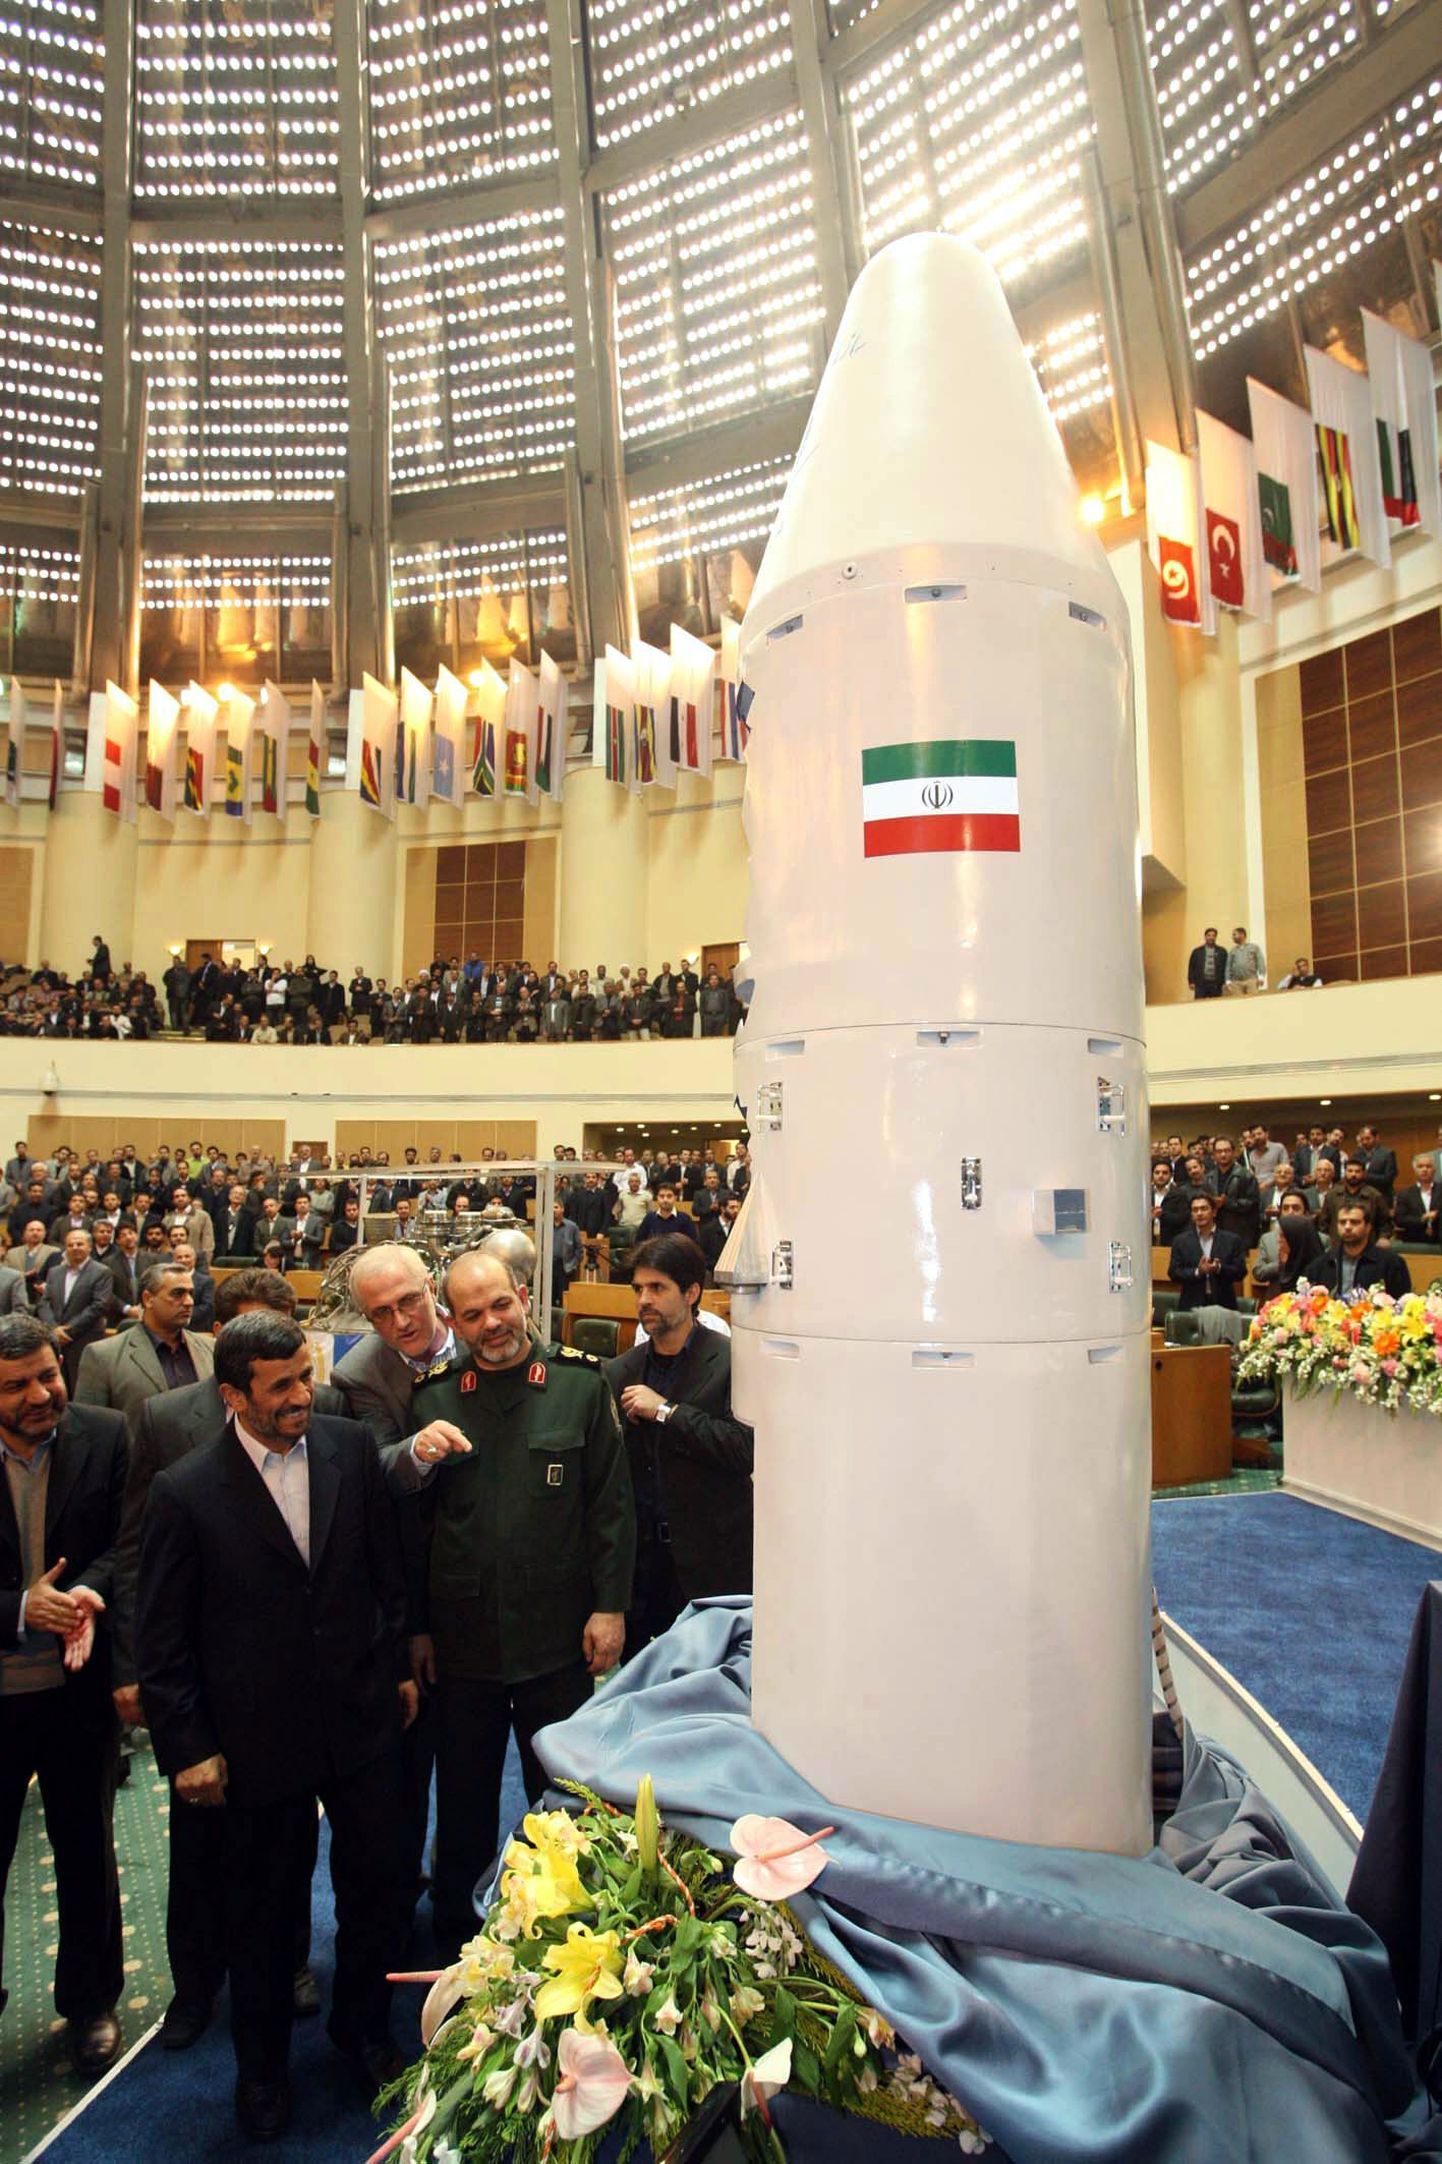 Sellises kapslis soovib Iraan saata kosmosesse ahvi. Kapslit uudistavad Iraani president Mahmoud Ahmadinejad (vasakul) ja kaitseminister Ahmad Vahidi (paremal).